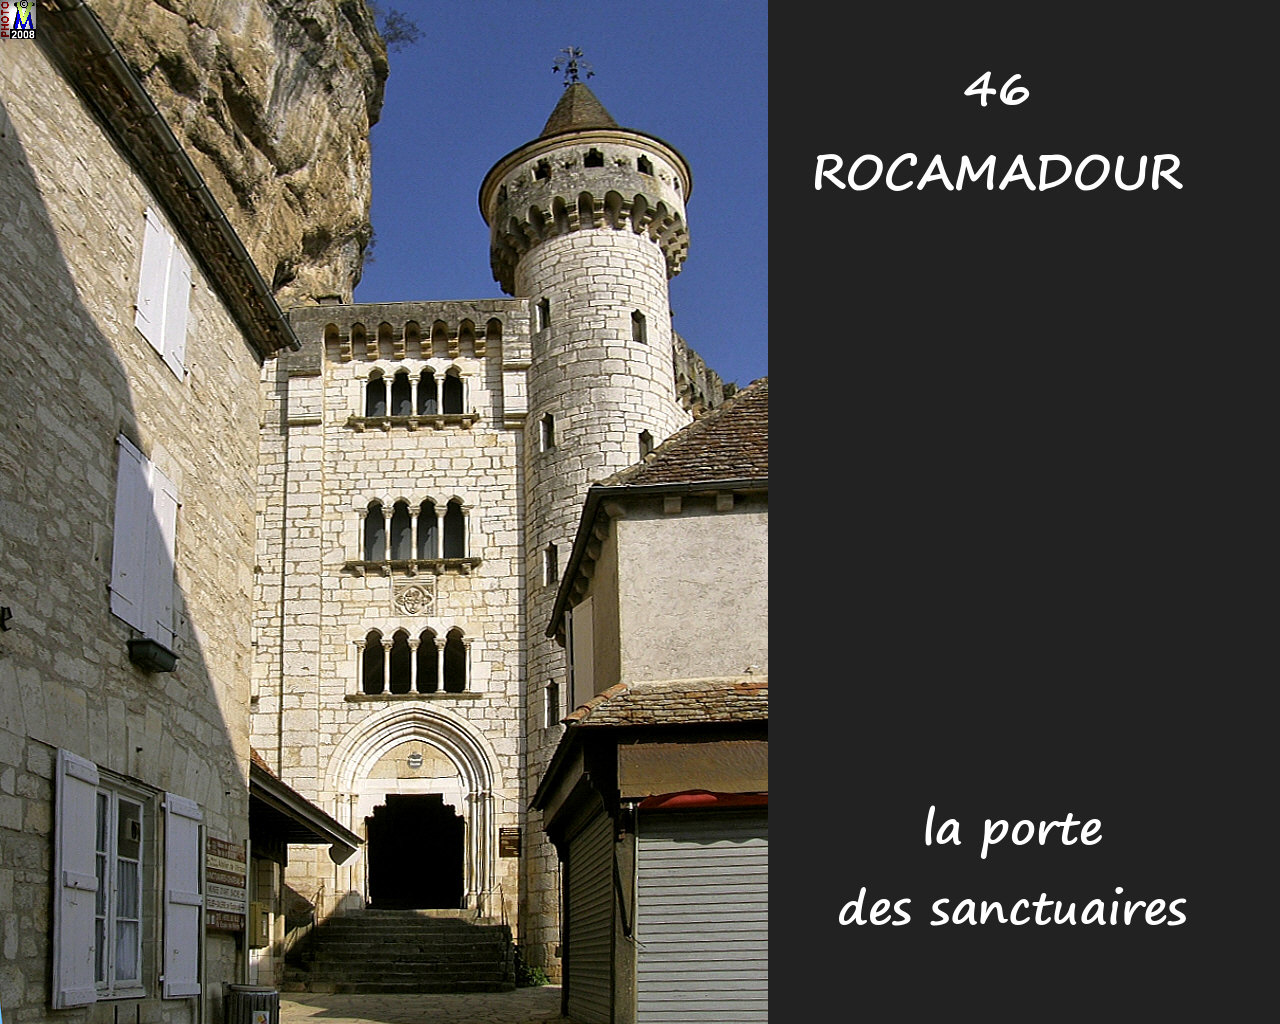 46ROCAMADOUR_sanctuaires_150.jpg